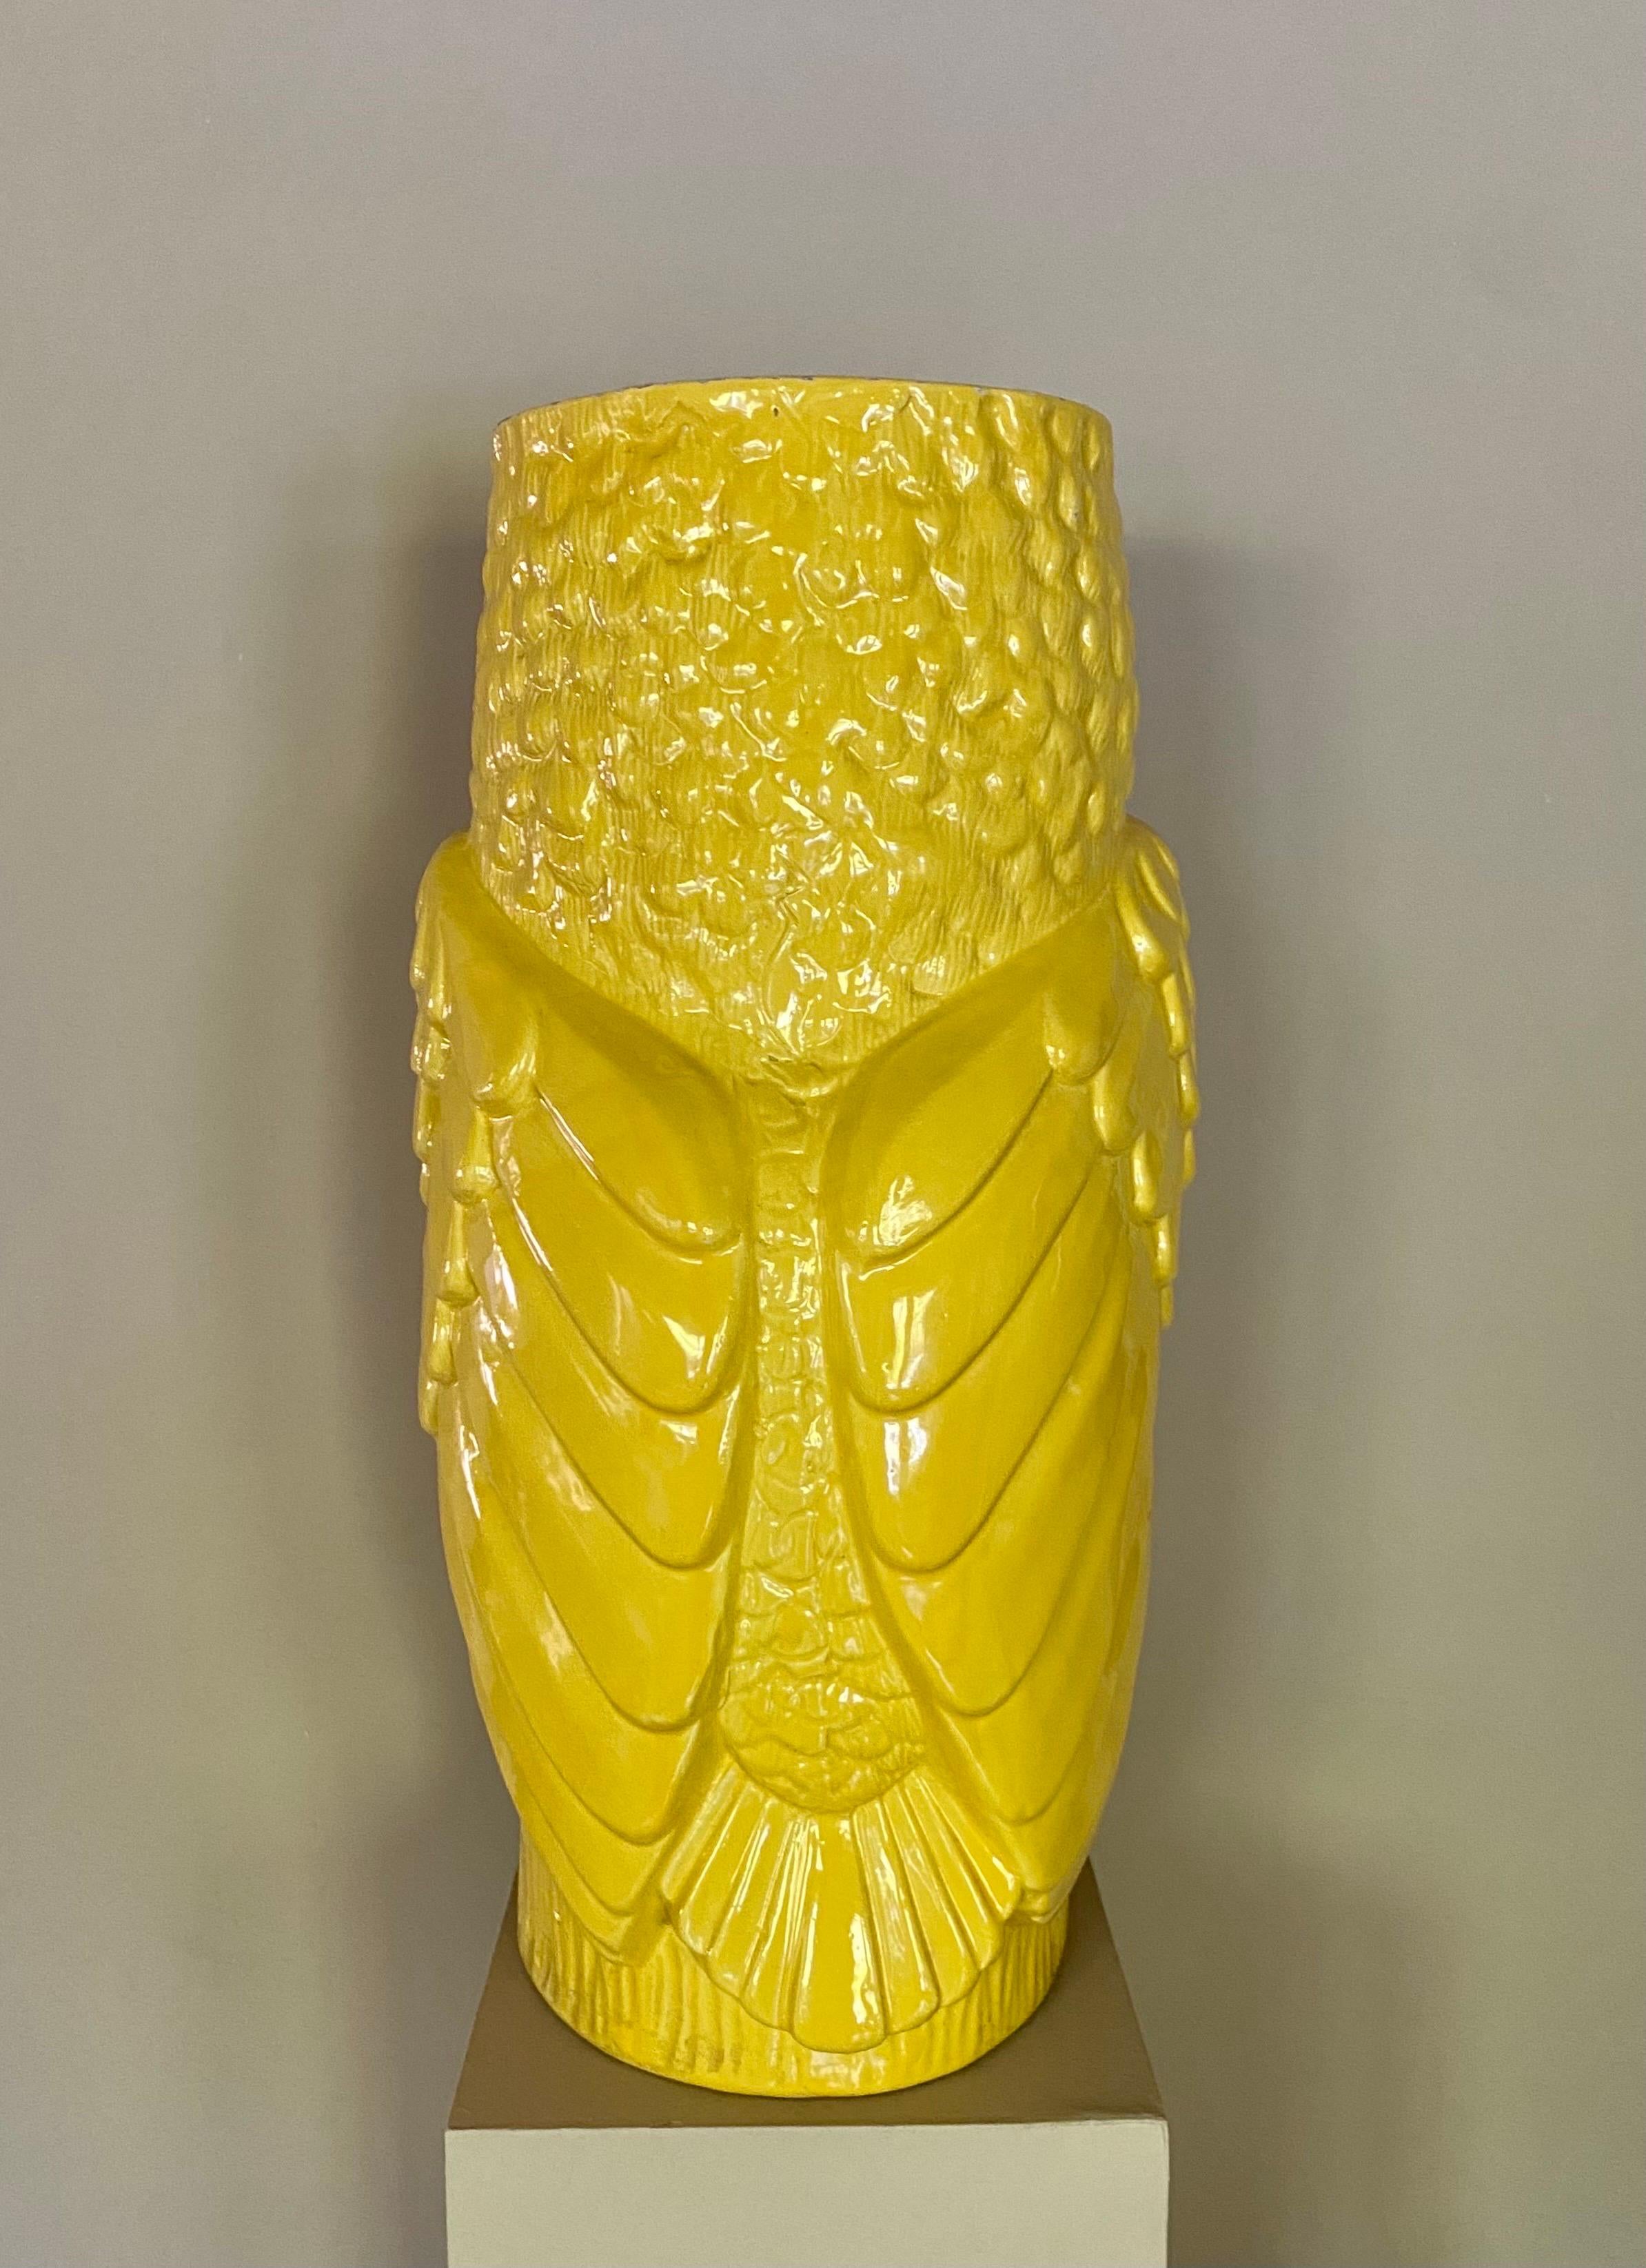 Glazed Large Midcentury Yellow Ceramic Pottery Owl Vase or Umbrella Holder For Sale